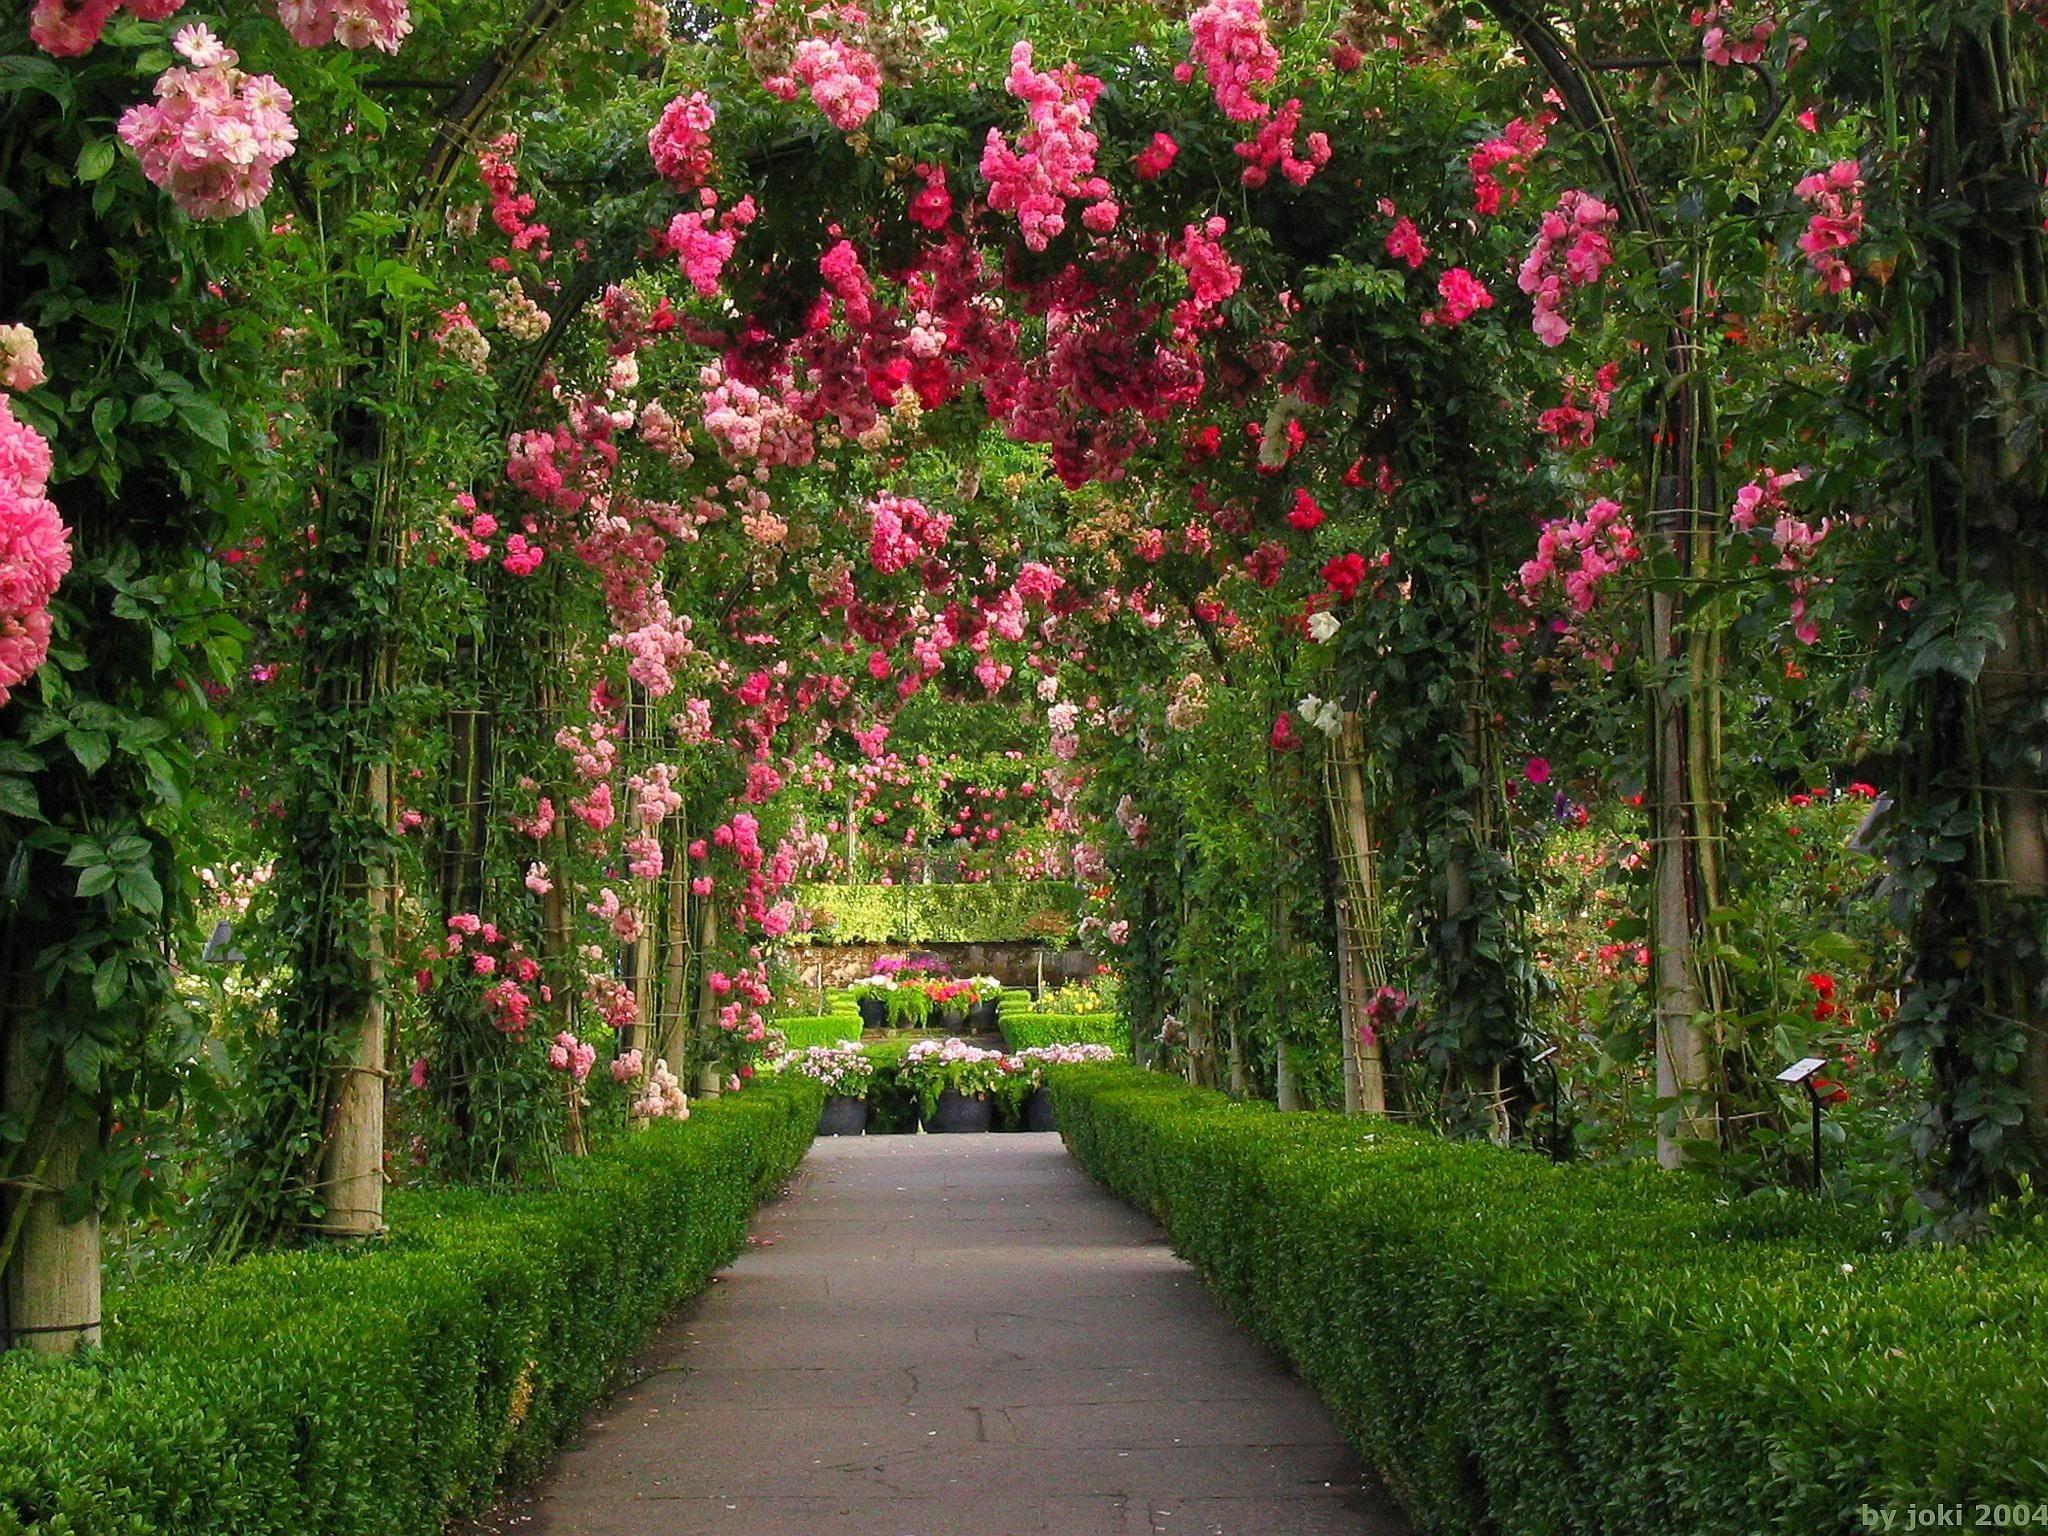 rose garden background